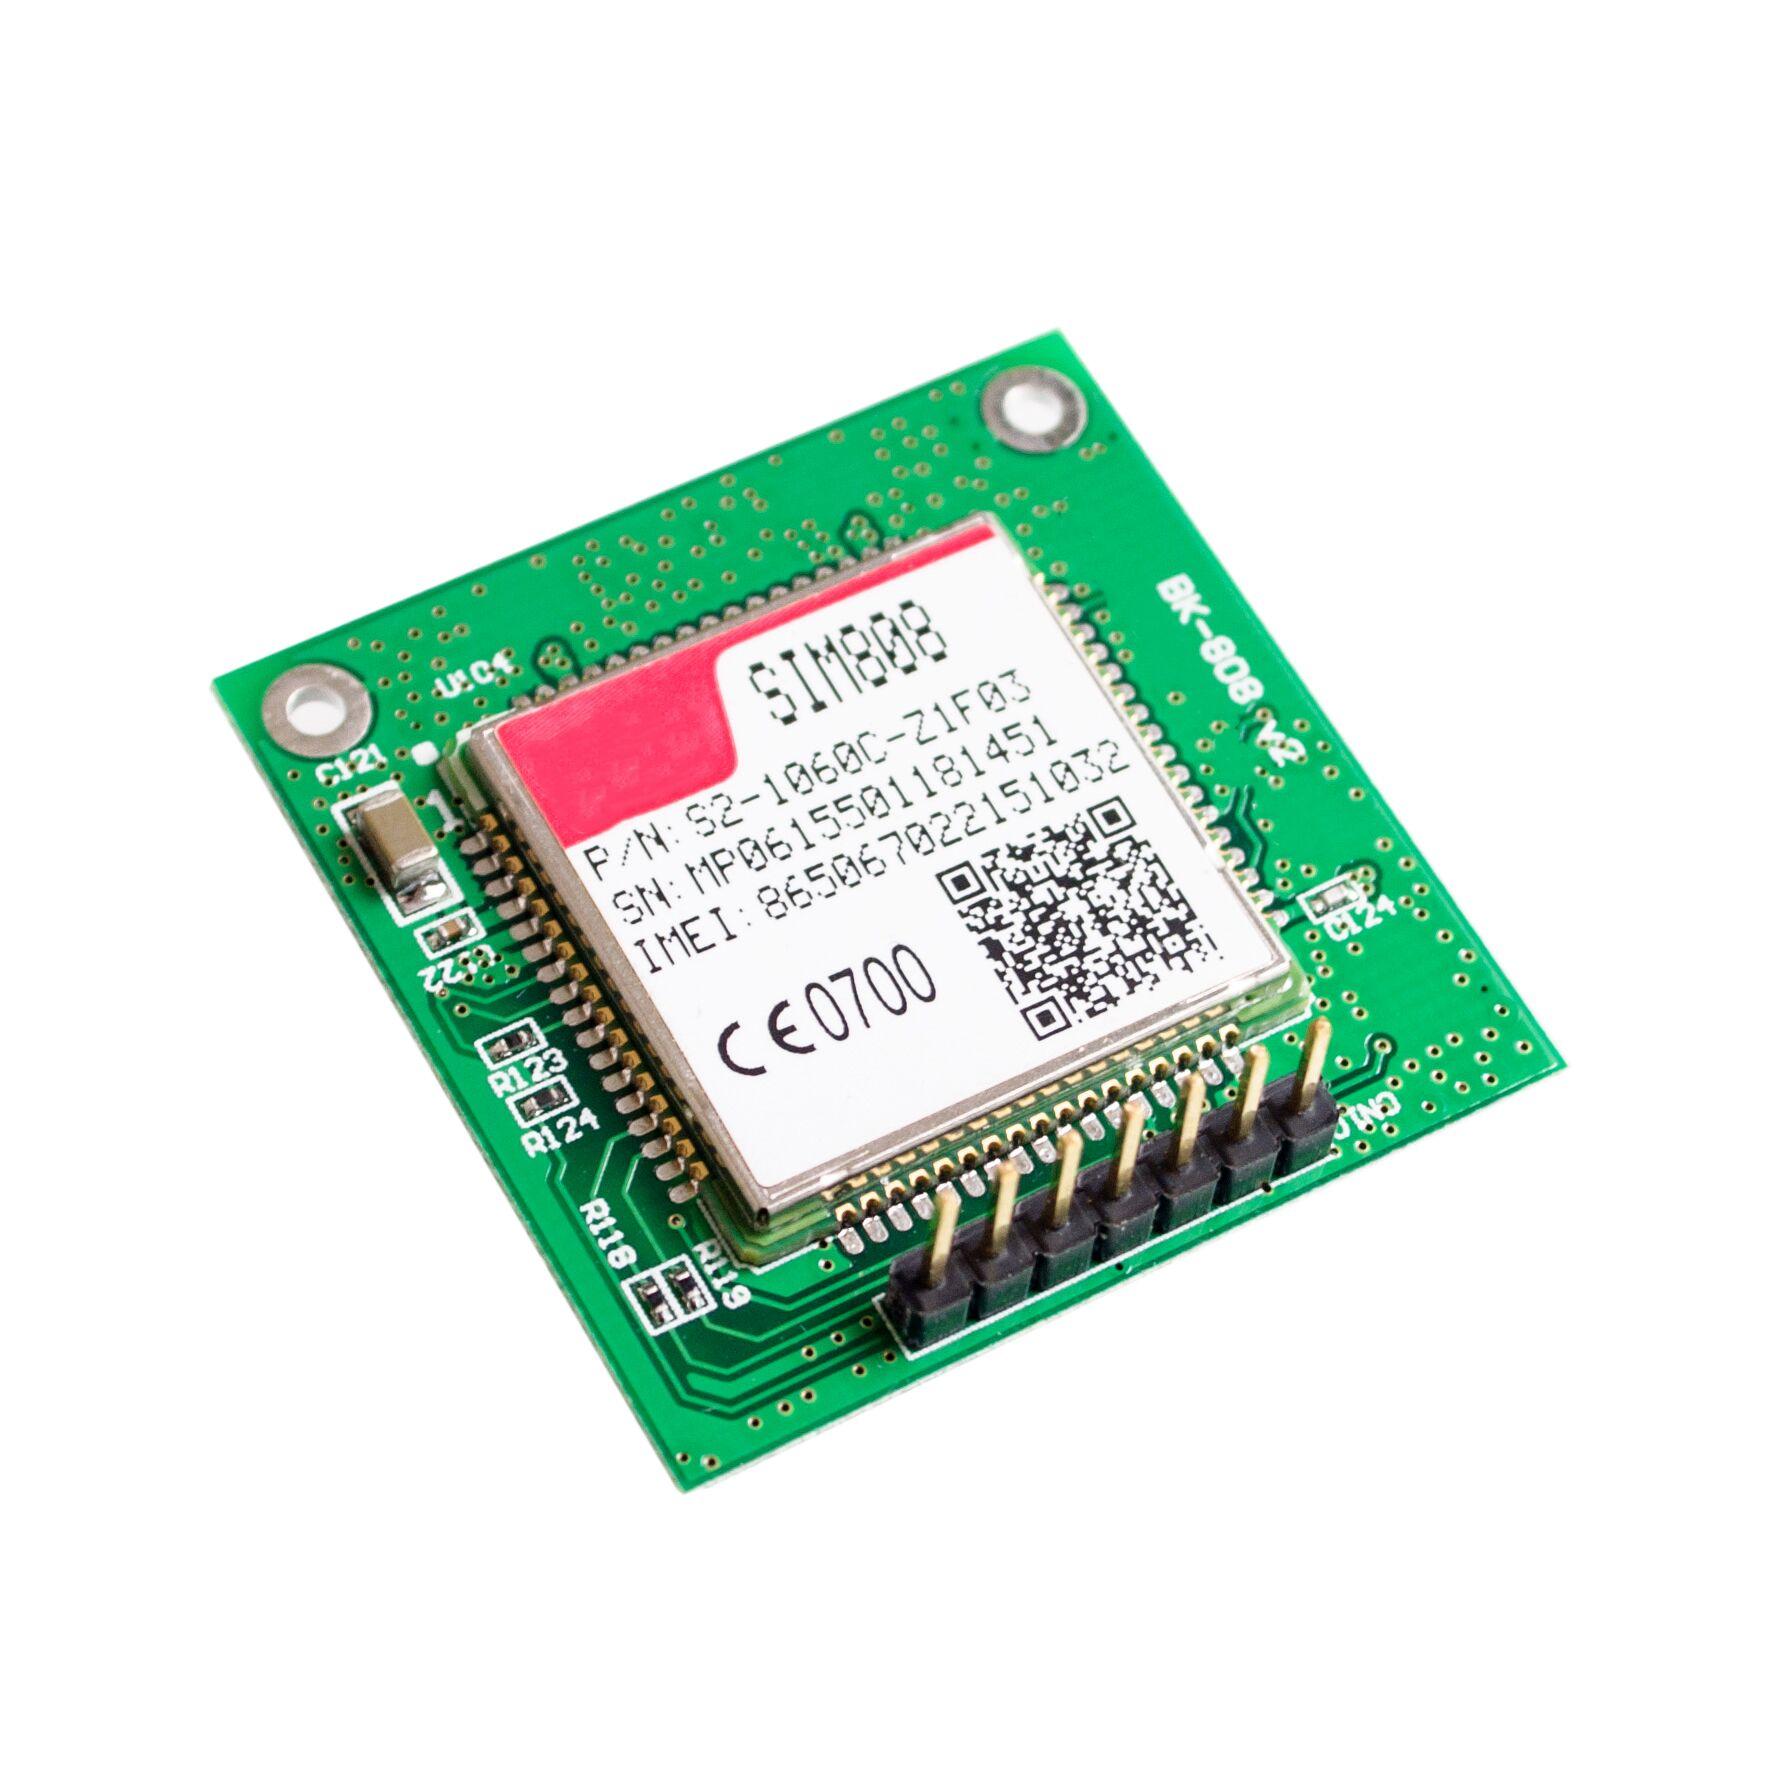 GSM GPS SIM808 Breakout Board,SIM808 core board,2 in 1 Quad-band GSMGPRS Module Integrated GPSBluetooth Module